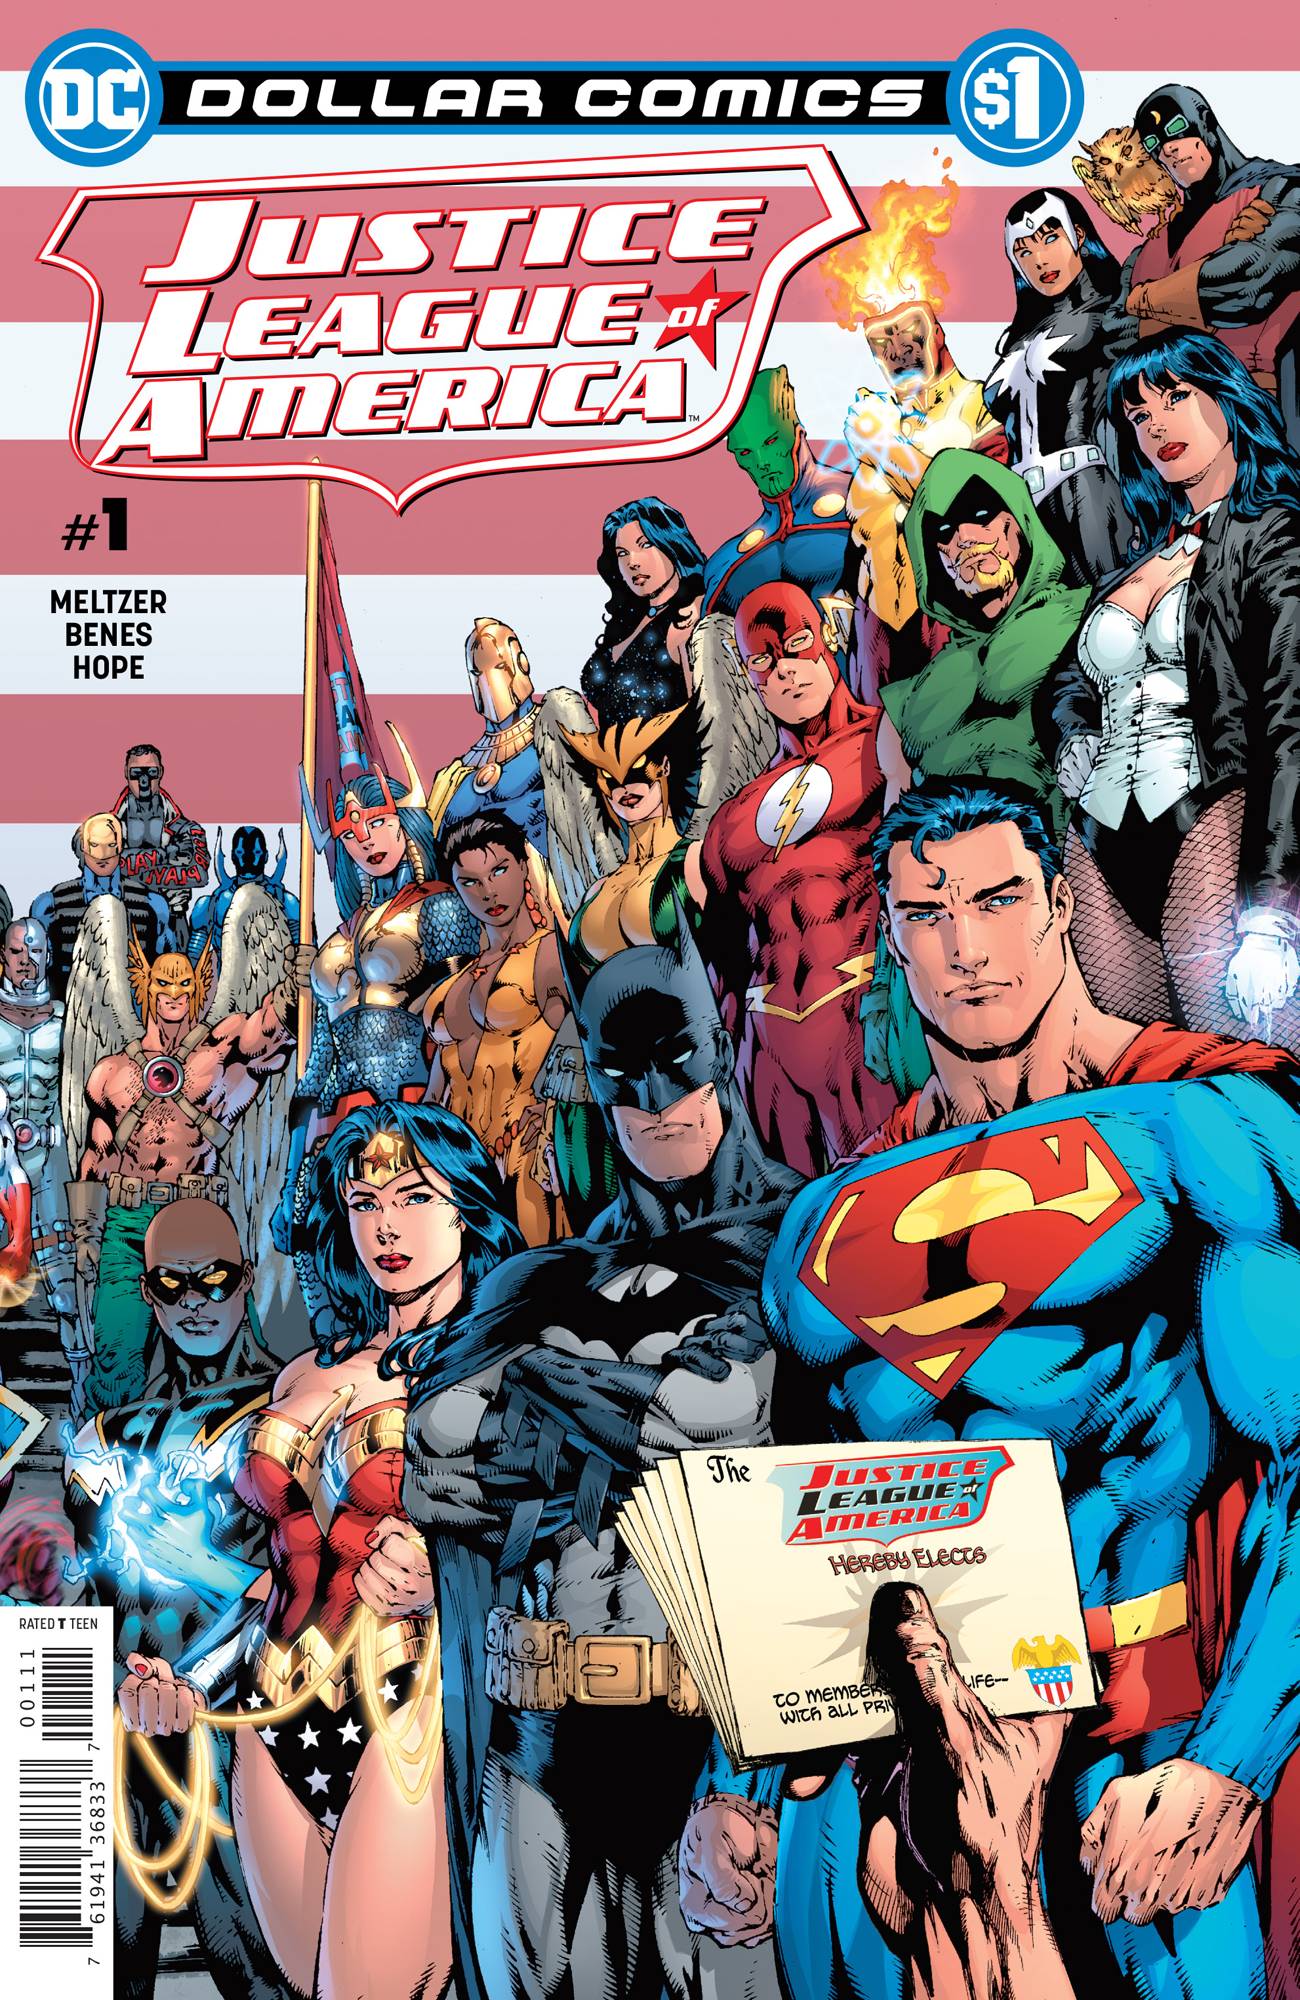 Dollar Comics Justice League of America #1 2006